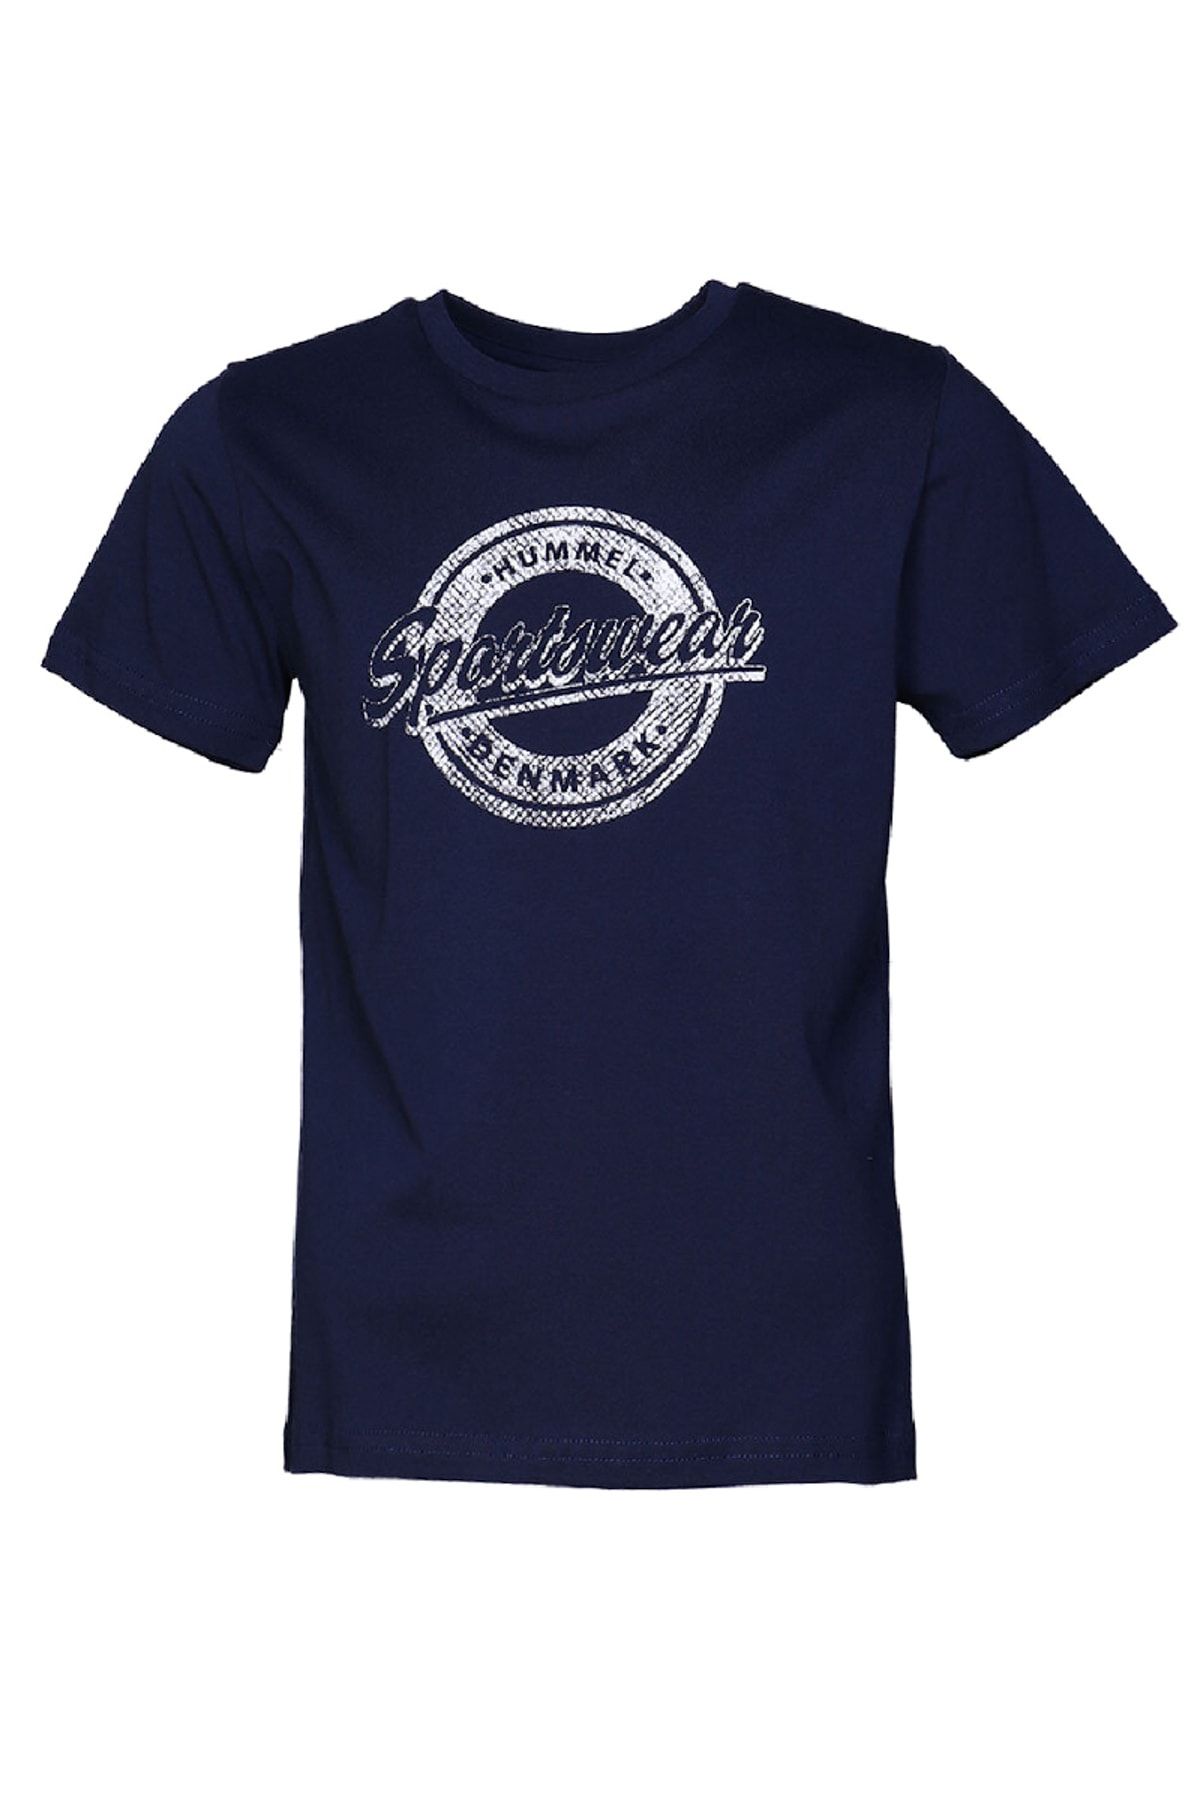 hummel HMLDILL  T-SHIRT S/S Lacivert Erkek Çocuk T-Shirt 100580708